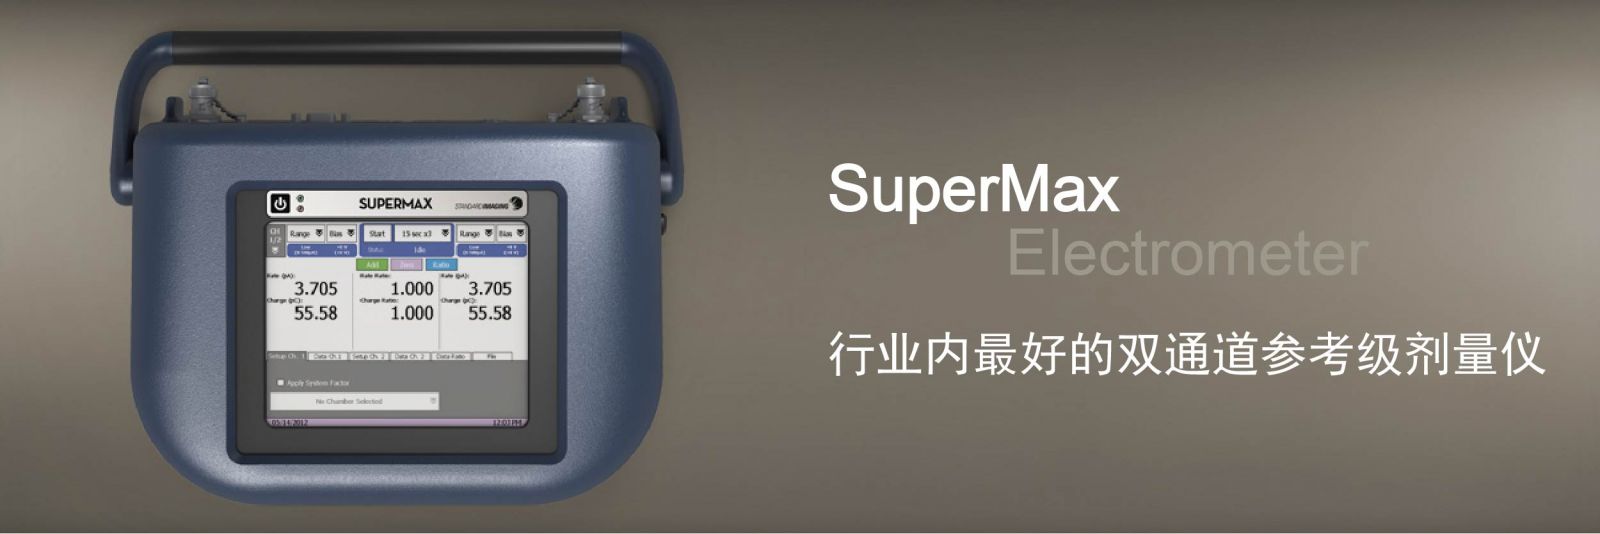 1参考级剂量仪SuperMax.jpg